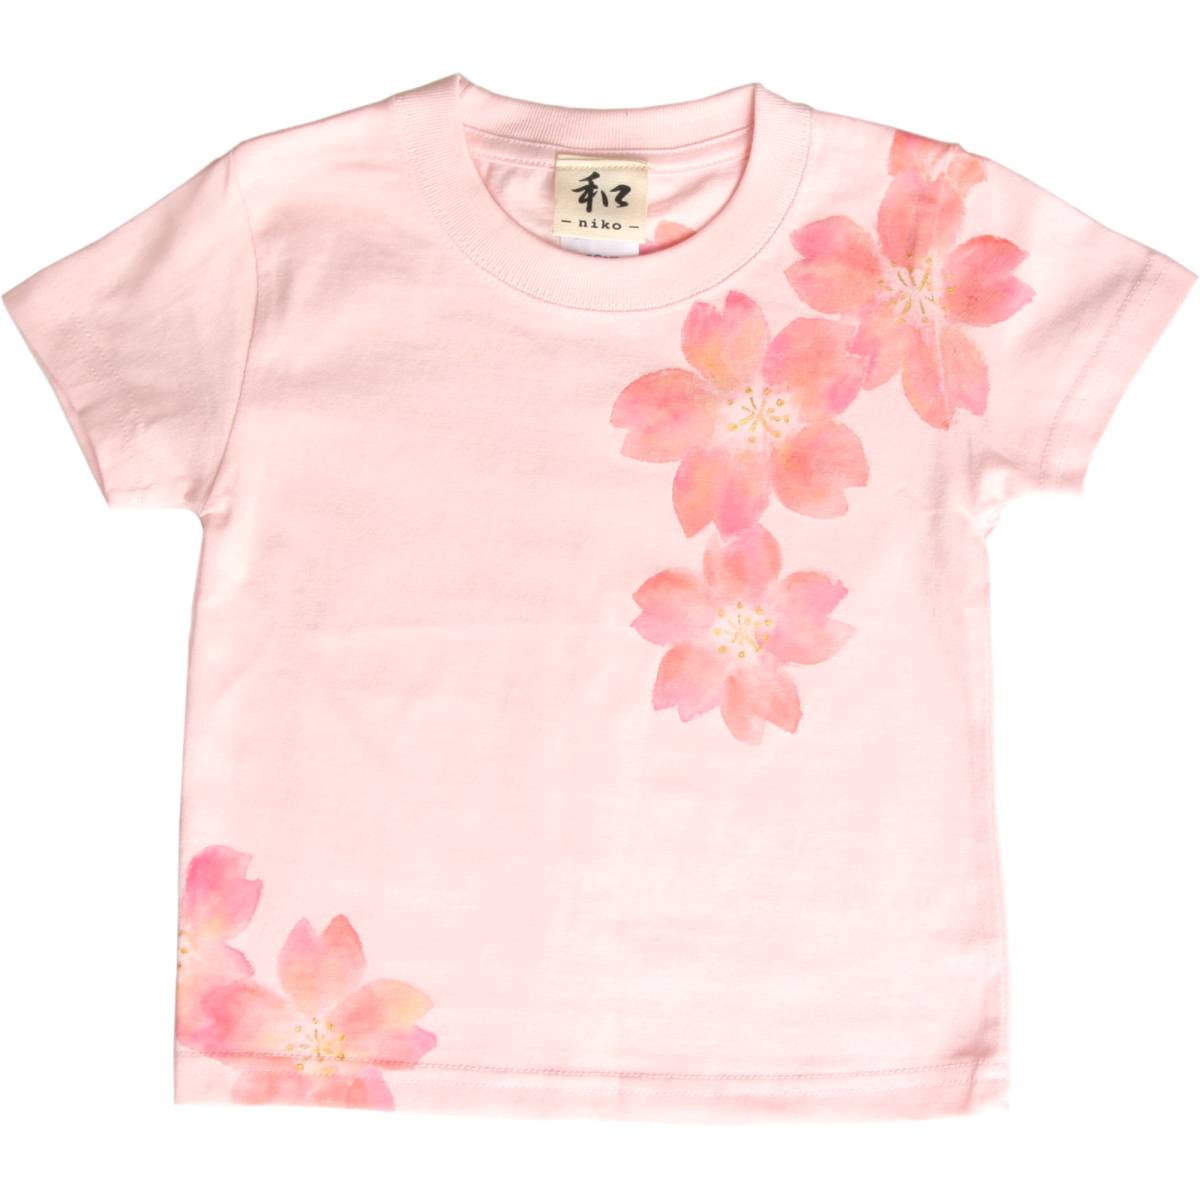 子供服 キッズTシャツ 100サイズ ピンク 舞桜柄 Tシャツ ハンドメイド 手描きTシャツ 和柄 春, トップス, 半袖Tシャツ, 100(95~104cm)